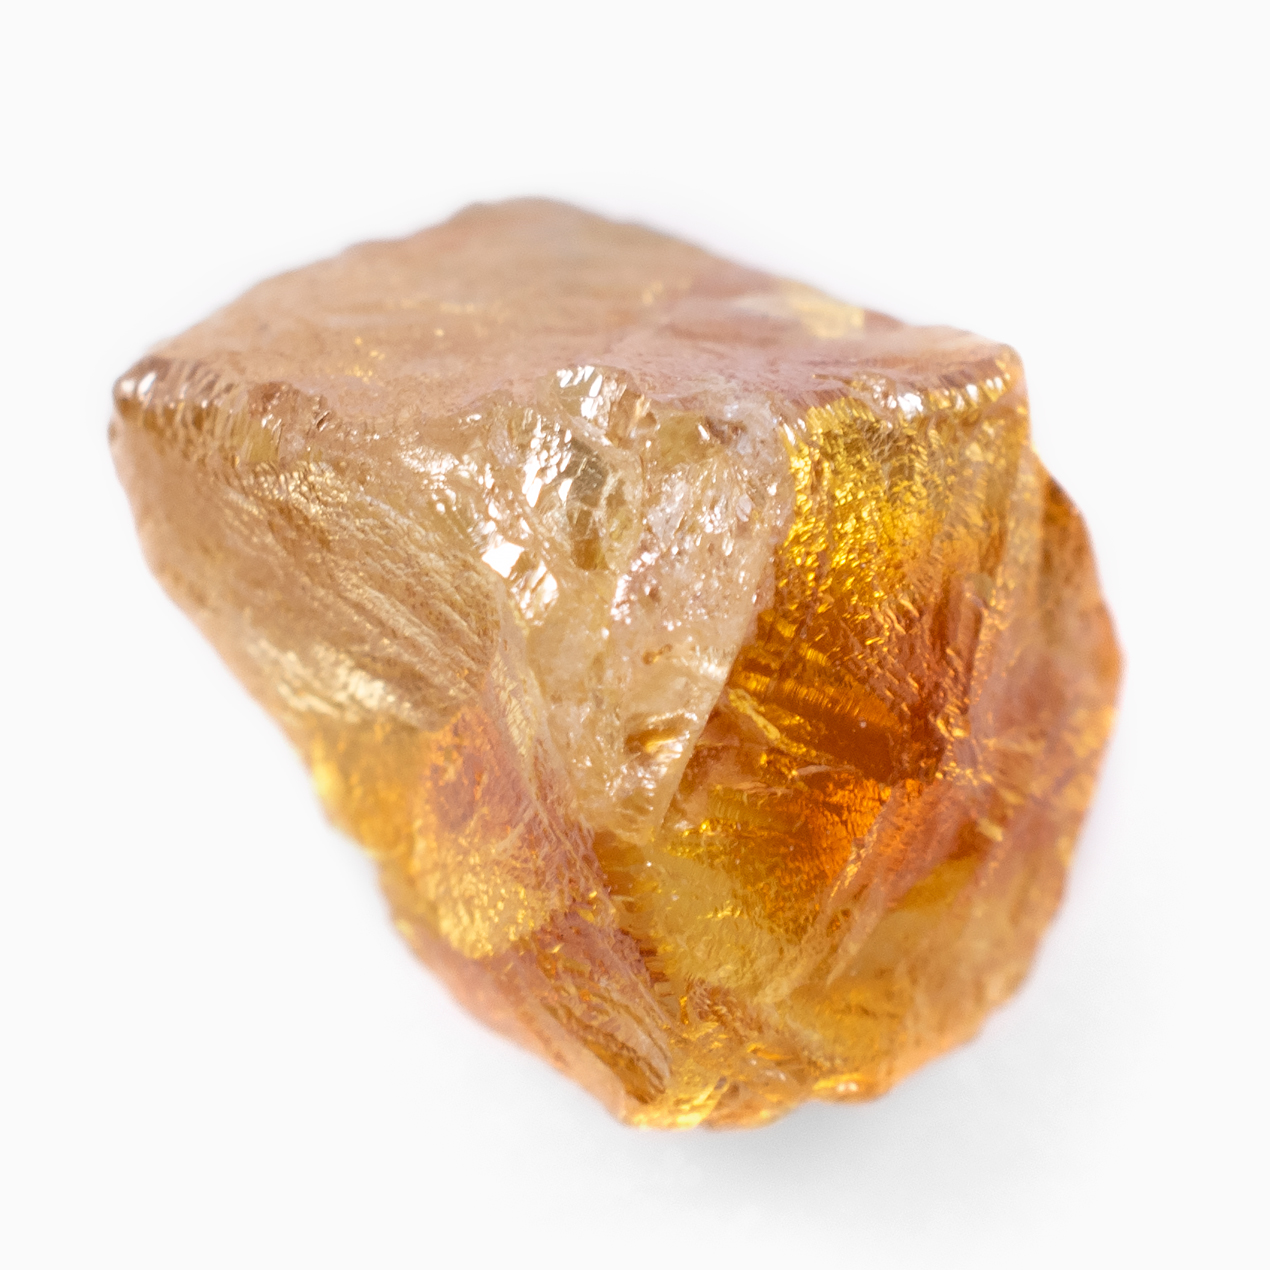 Stone long. Оранжевый камень с блестками. Застывшее пламя. Orange Gemstone. Бриллиантовая цвет оранжевый.